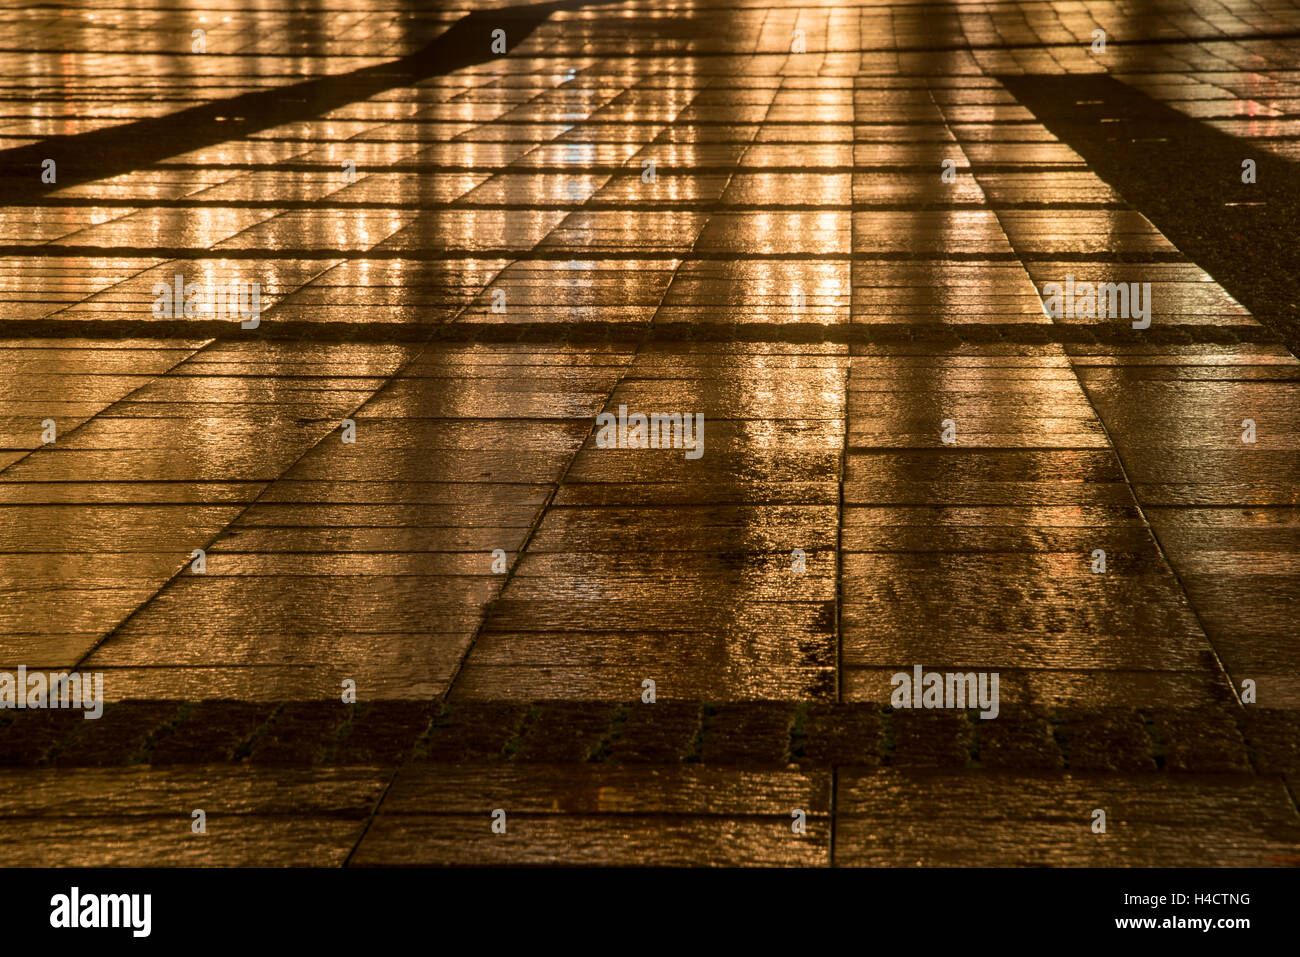 Golden illuminato quadrato nella città dalle luci riflessione in corrispondenza di una notte piovosa Foto Stock